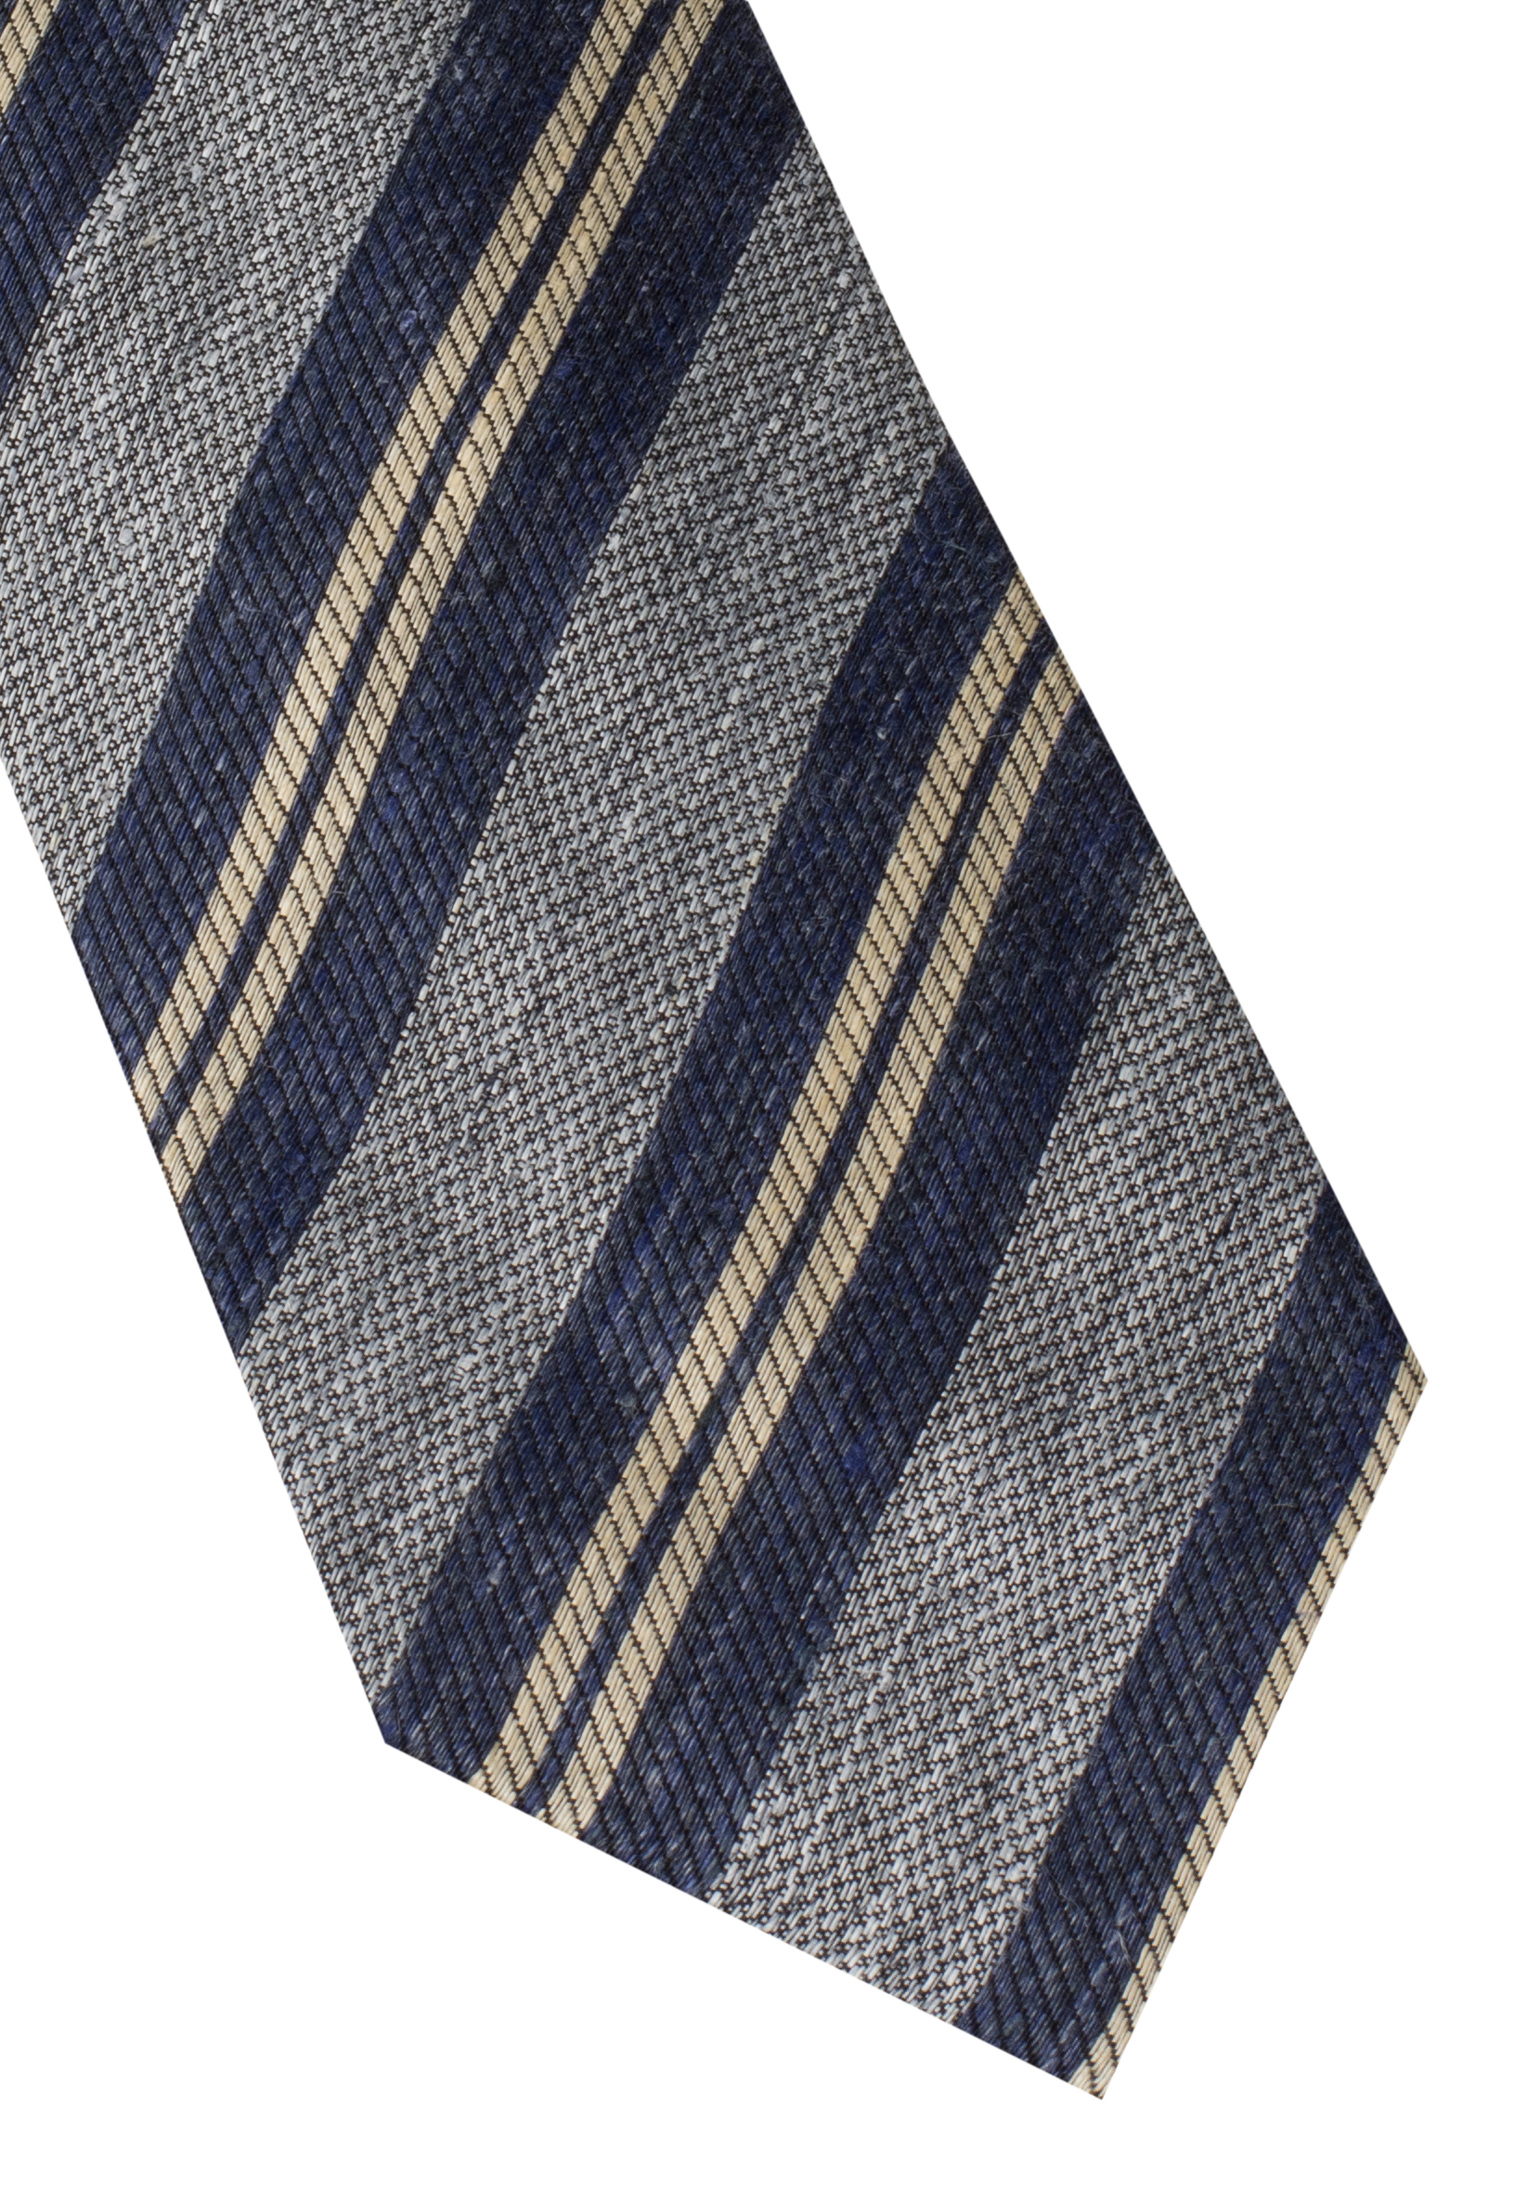 Tie in blue striped